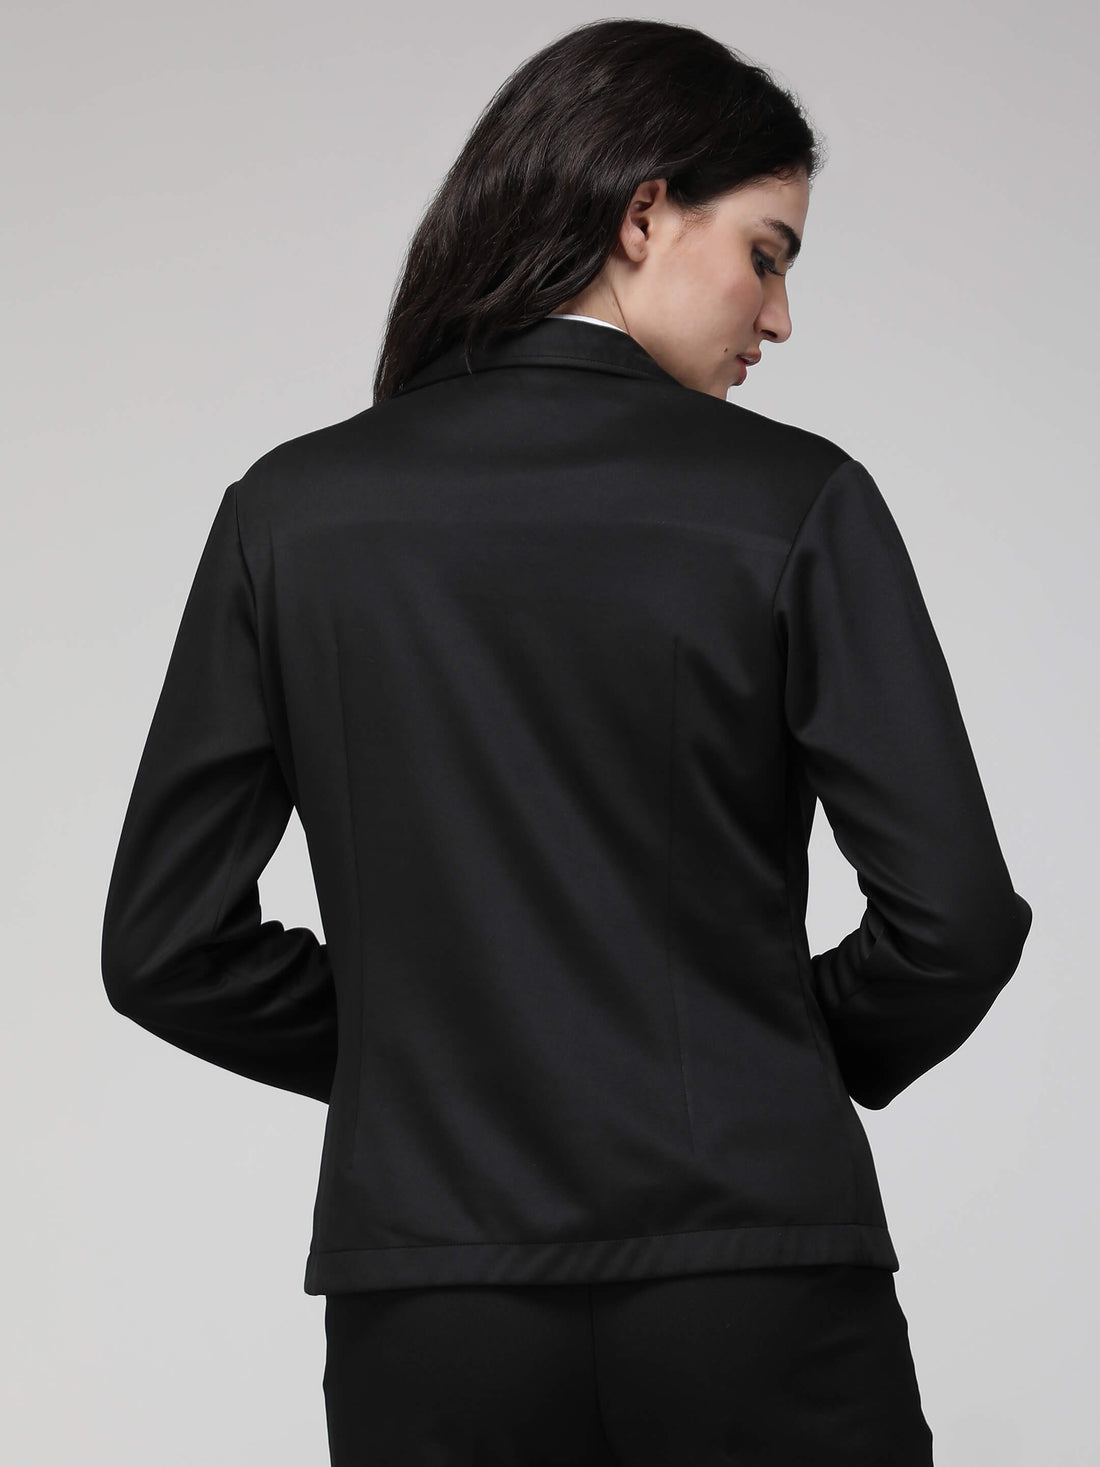 Black jacket - formal